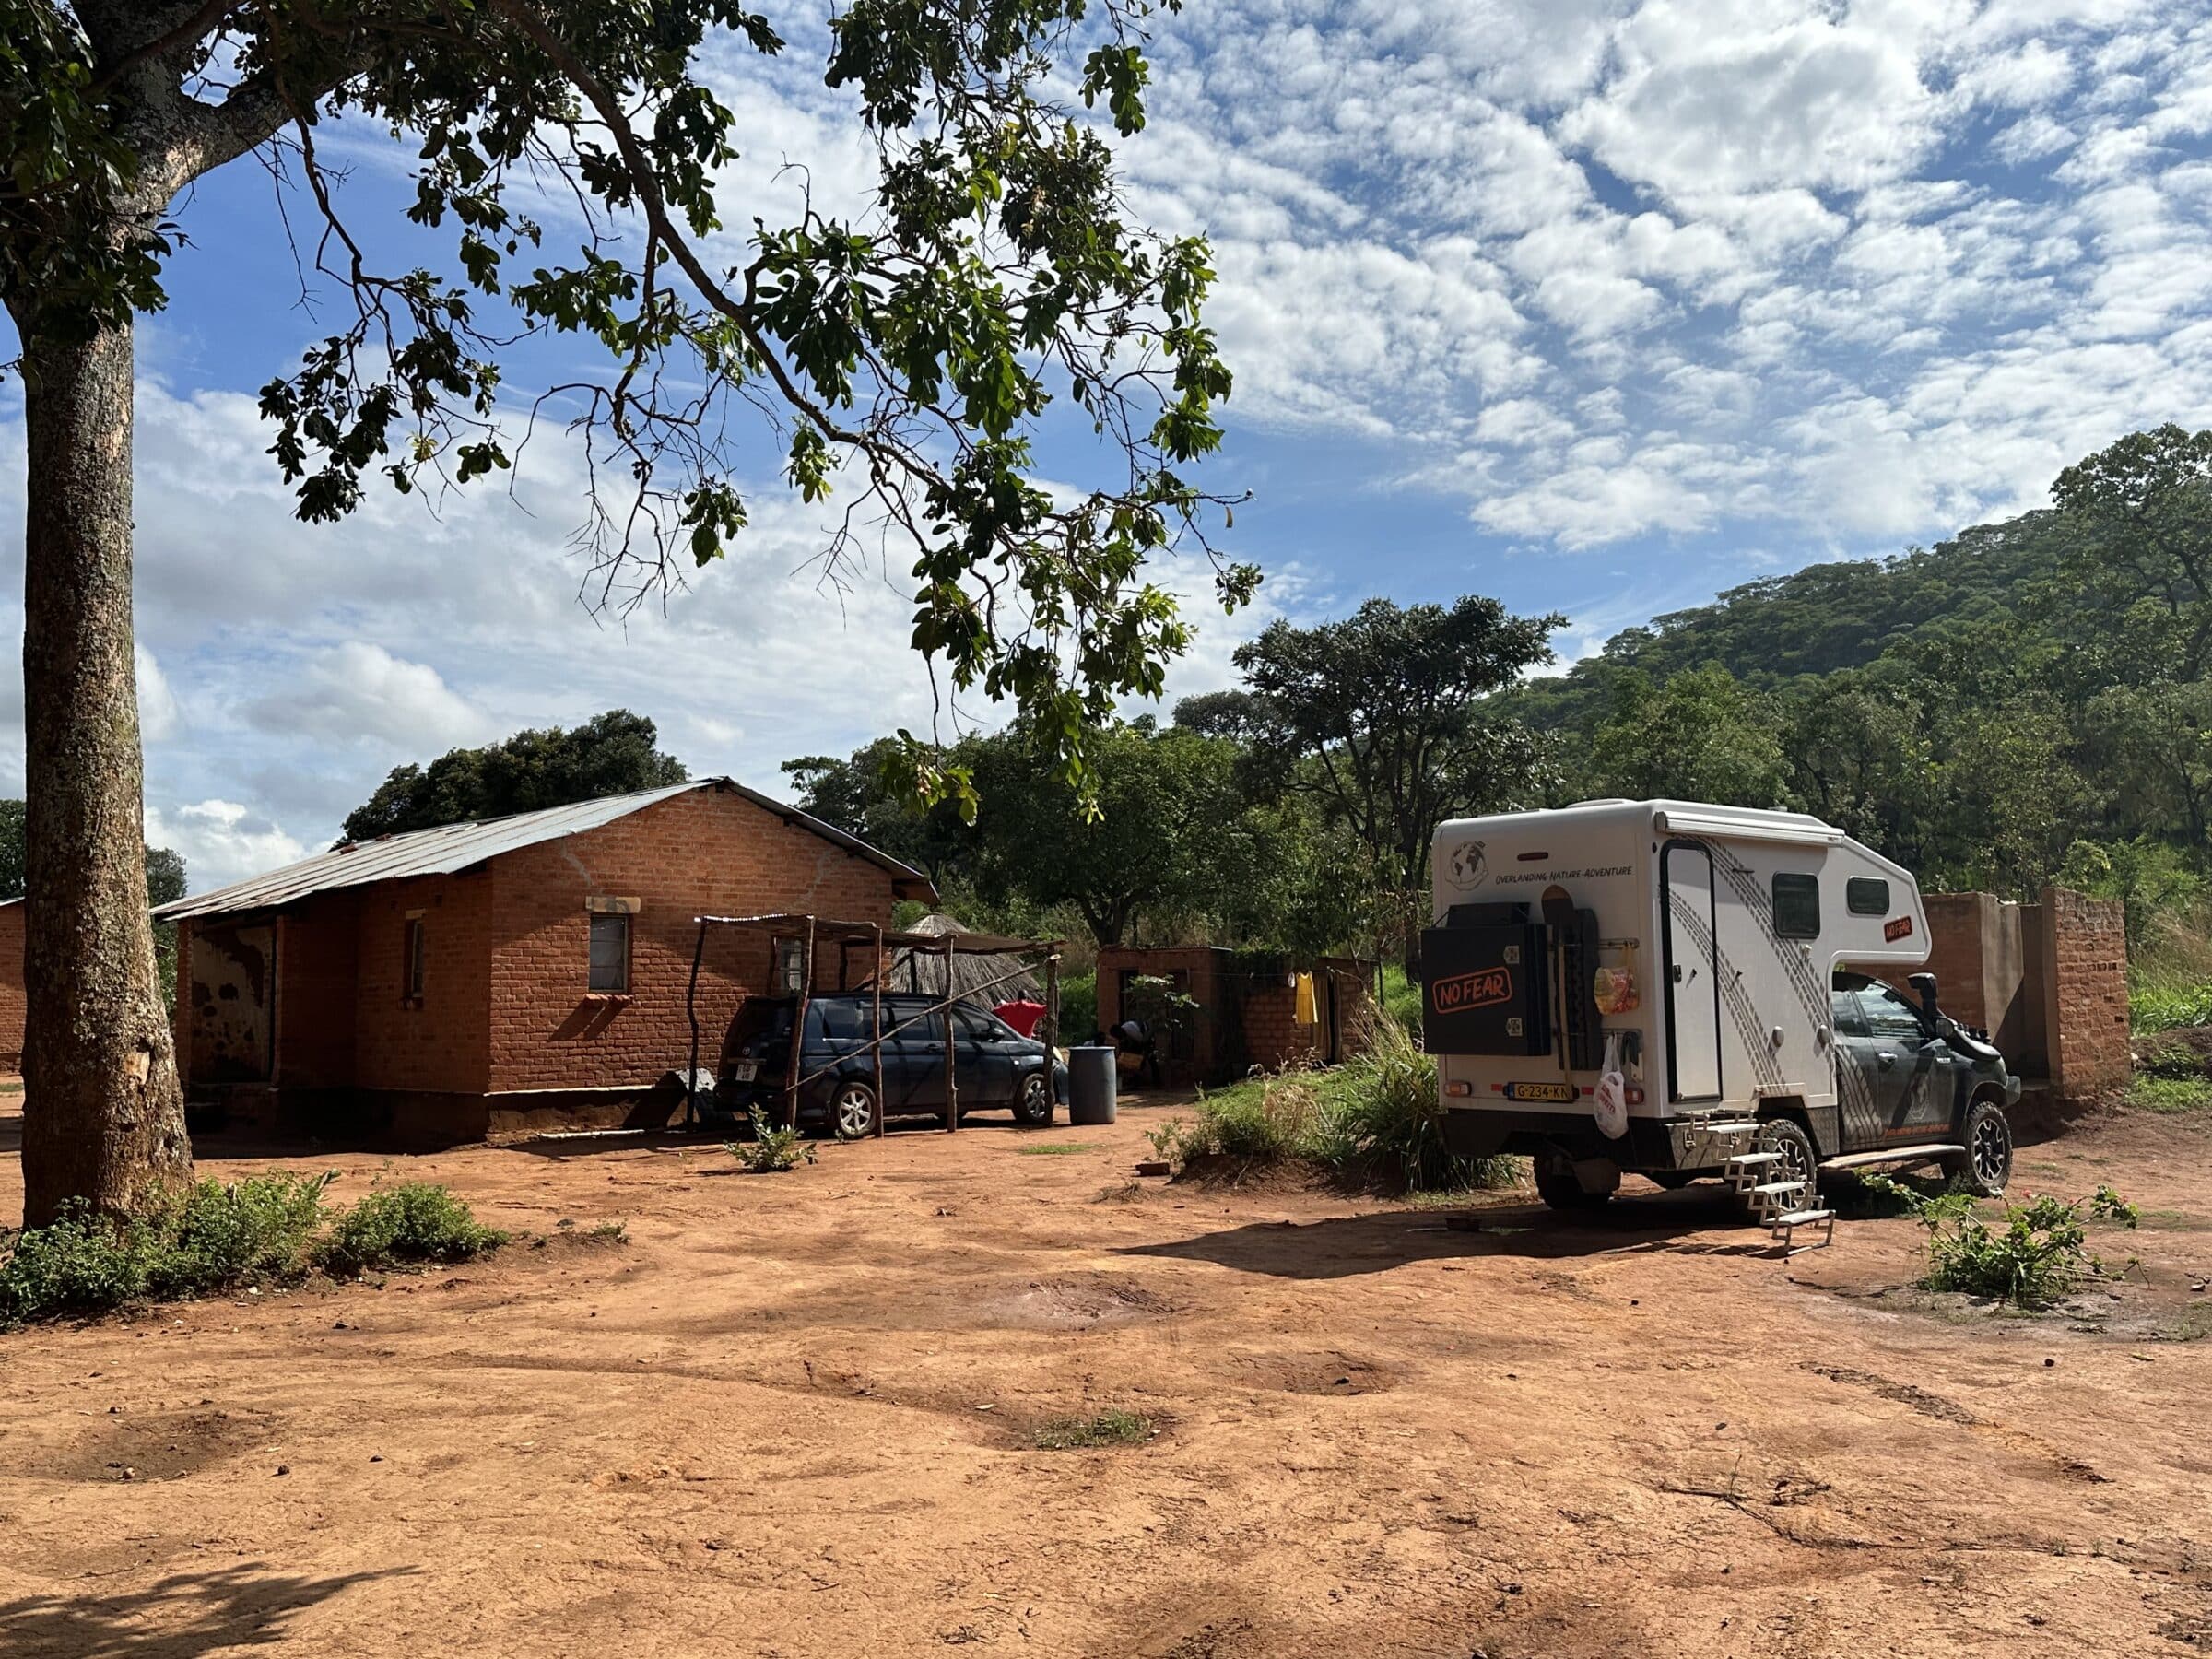 Prenoćiti u dvorištu ravnatelja | Prekrcavanje u Zambiji